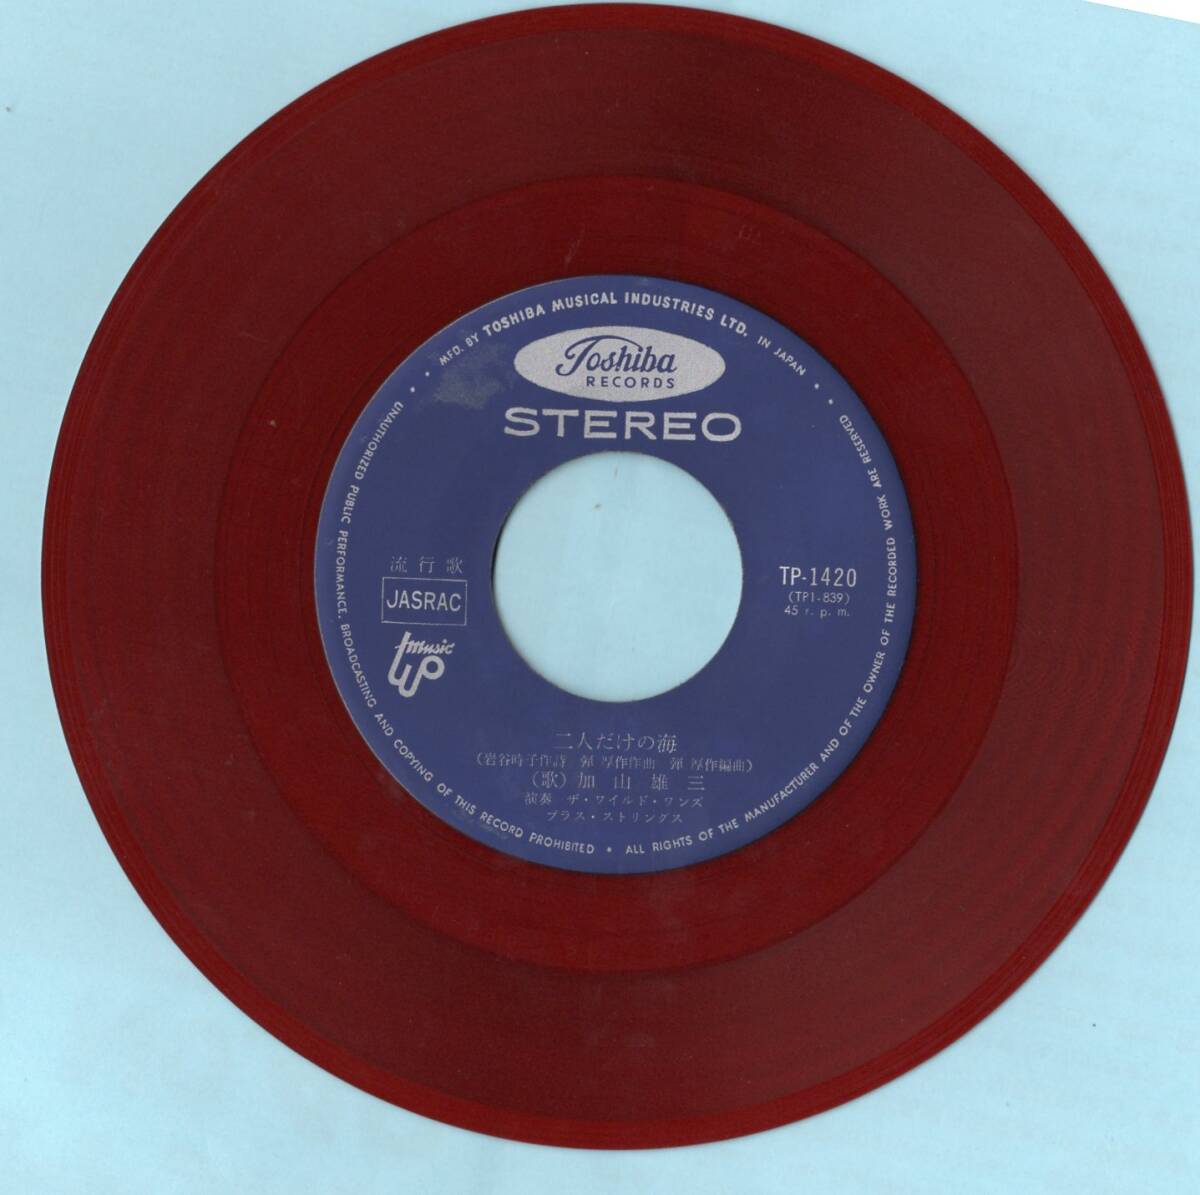 1967年昭和42年 加山雄三 二人だけの海 シングルレコード TP-1420 赤盤? 和モノ? 昭和歌謡 _画像5